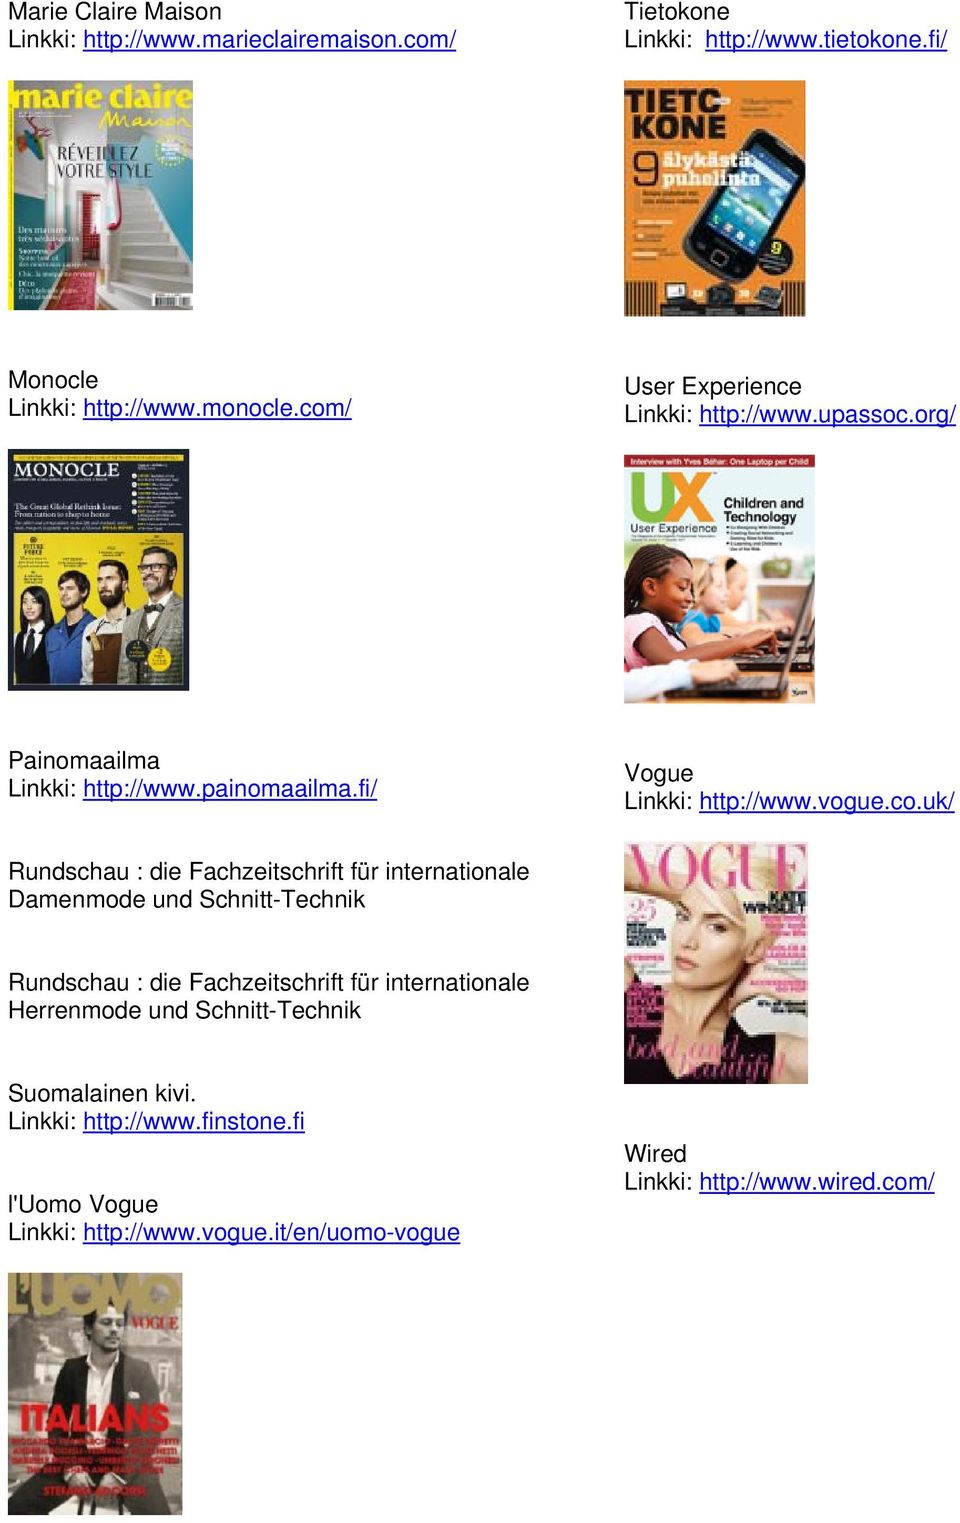 Rundschau : die Fachzeitschrift für internationale Damenmode und Schnitt-Technik Rundschau : die Fachzeitschrift für internationale Herrenmode